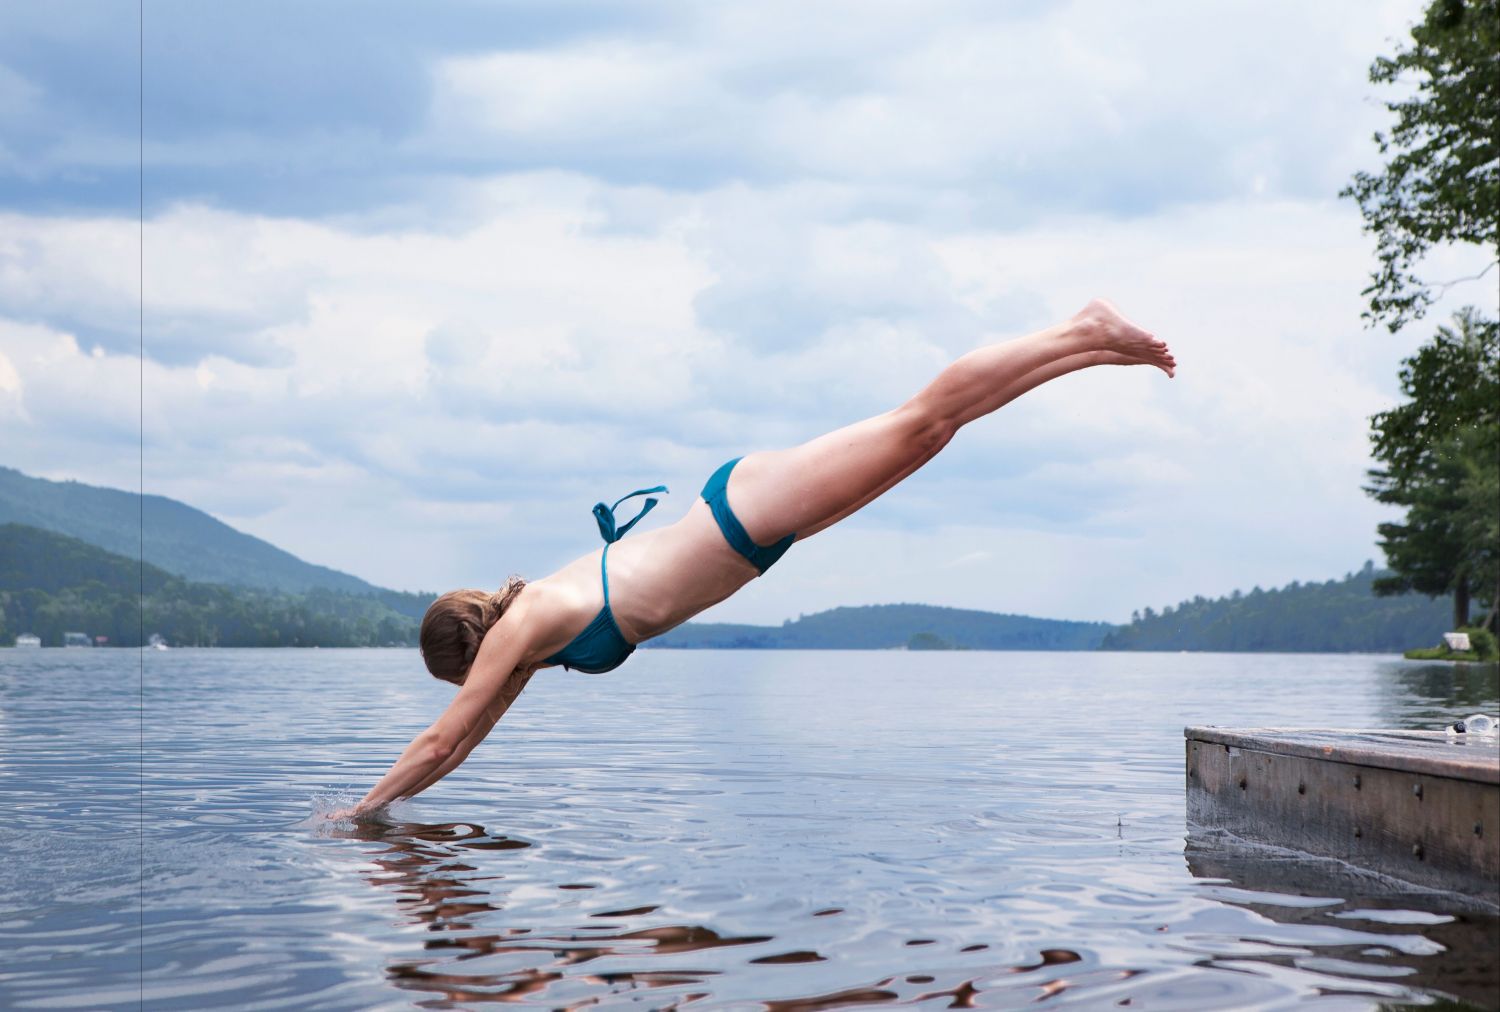  Eine Frau springt in einen See. Thema: Wechseljahresbeschwerden